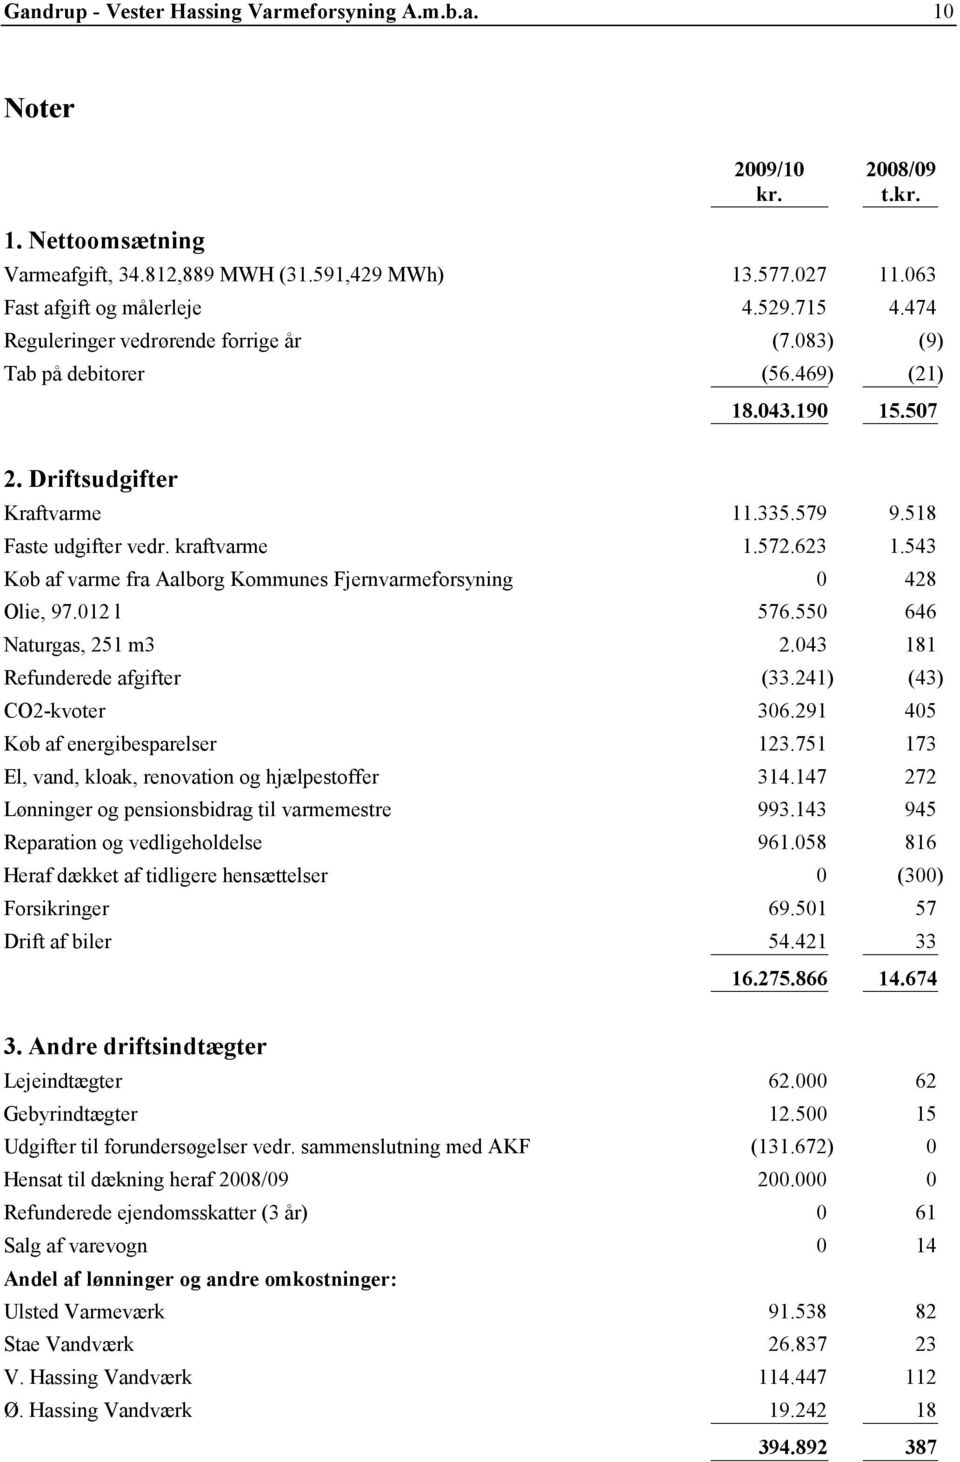 543 Køb af varme fra Aalborg Kommunes Fjernvarmeforsyning 0 428 Olie, 97.012 l 576.550 646 Naturgas, 251 m3 2.043 181 Refunderede afgifter (33.241) (43) CO2-kvoter 306.